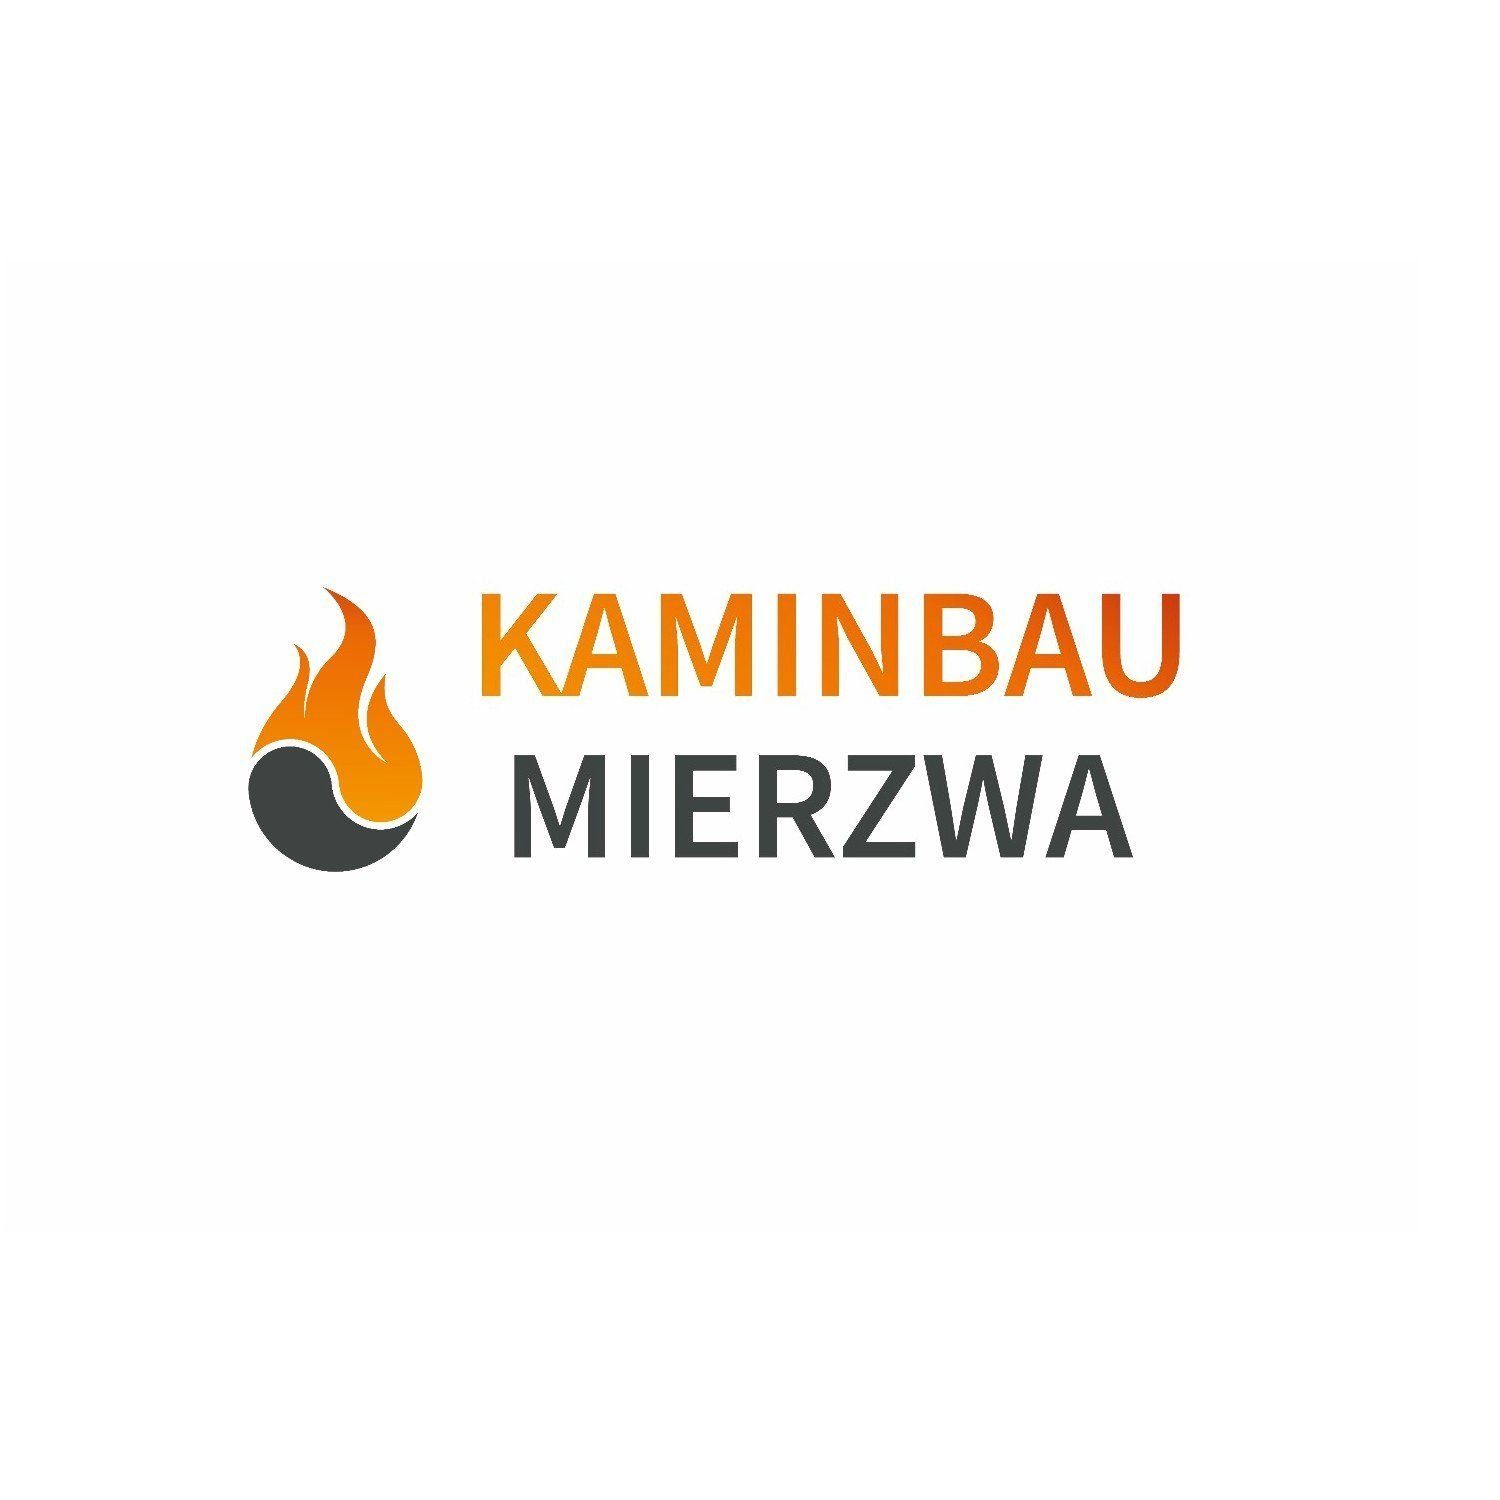 Sorrento Mierzwa Schwarz Pompei Ethanolkamin & Tischkamin, Gelkamin, Kaminbau (Premium), Echtfeuer-Dekokamin